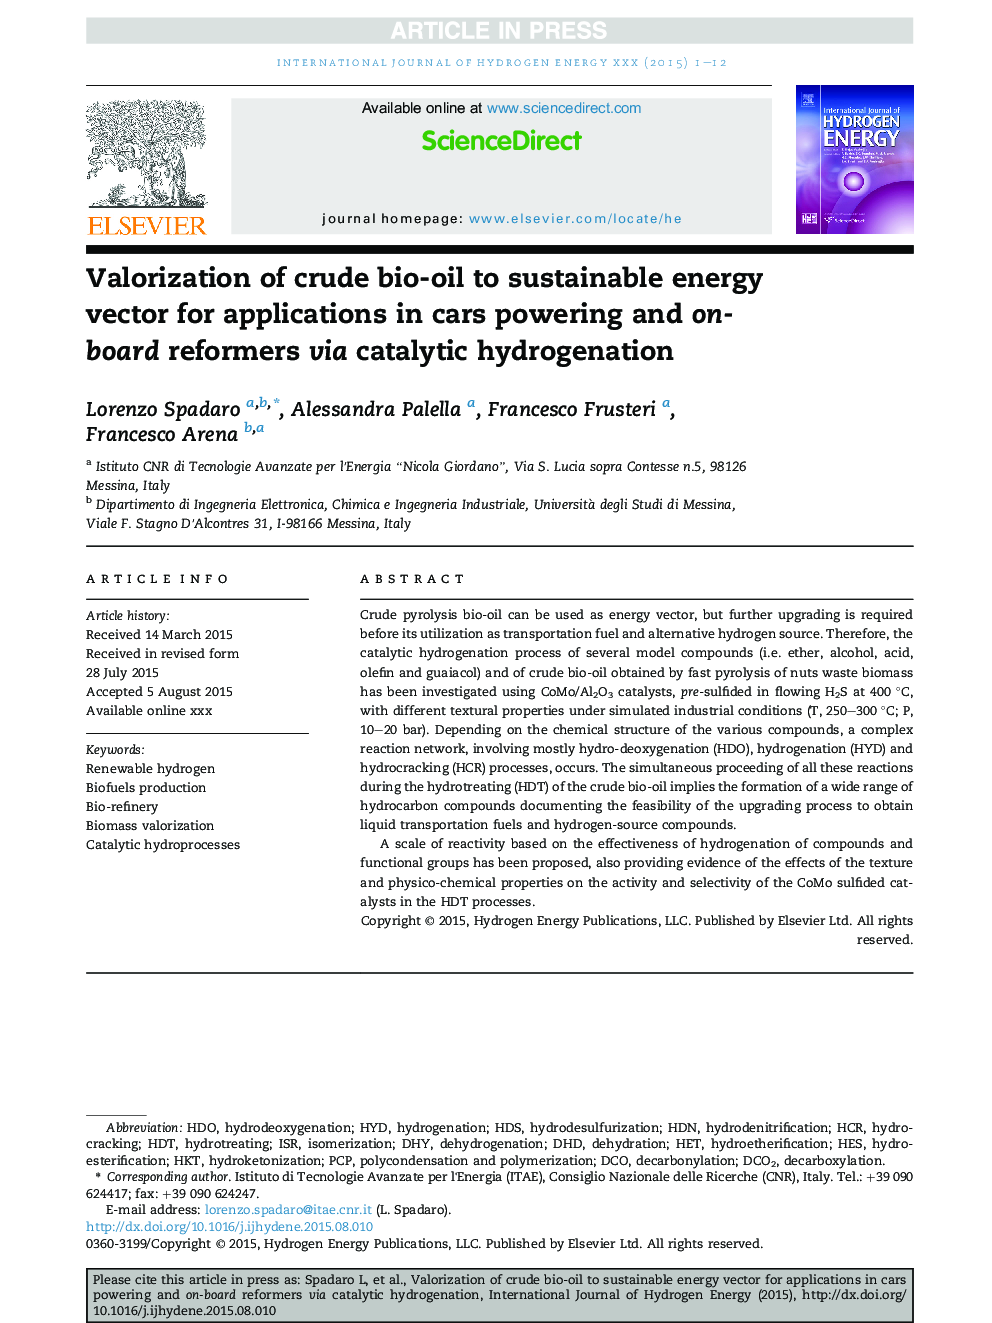 ارزیابی بیولوژیکی نفت خام به بردار انرژی پایدار برای برنامه های کاربردی در خودروسازی و اصلاح کننده های هیبریدی از طریق هیدروژنه شدن کاتالیزور 